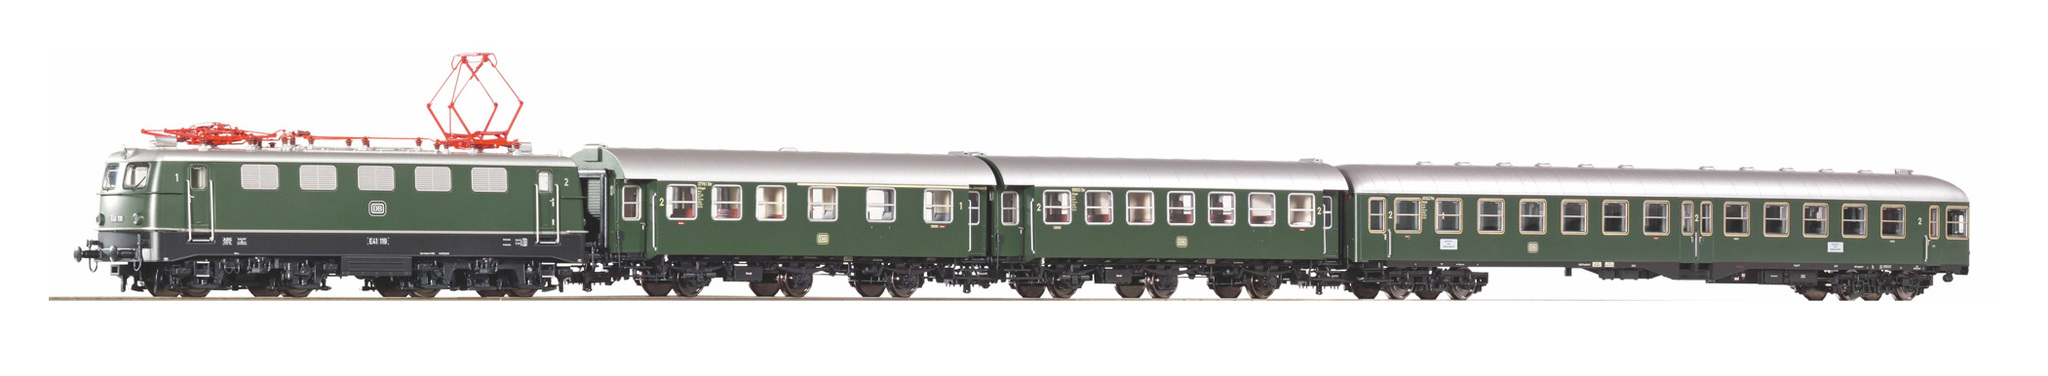 Пассажирский состав локомотивы вагоны. Пассажирский вагон Piko n. Piko 1/87 размер колеи. Locomotive br41 1:87. Вагоны с тремя дверьми.